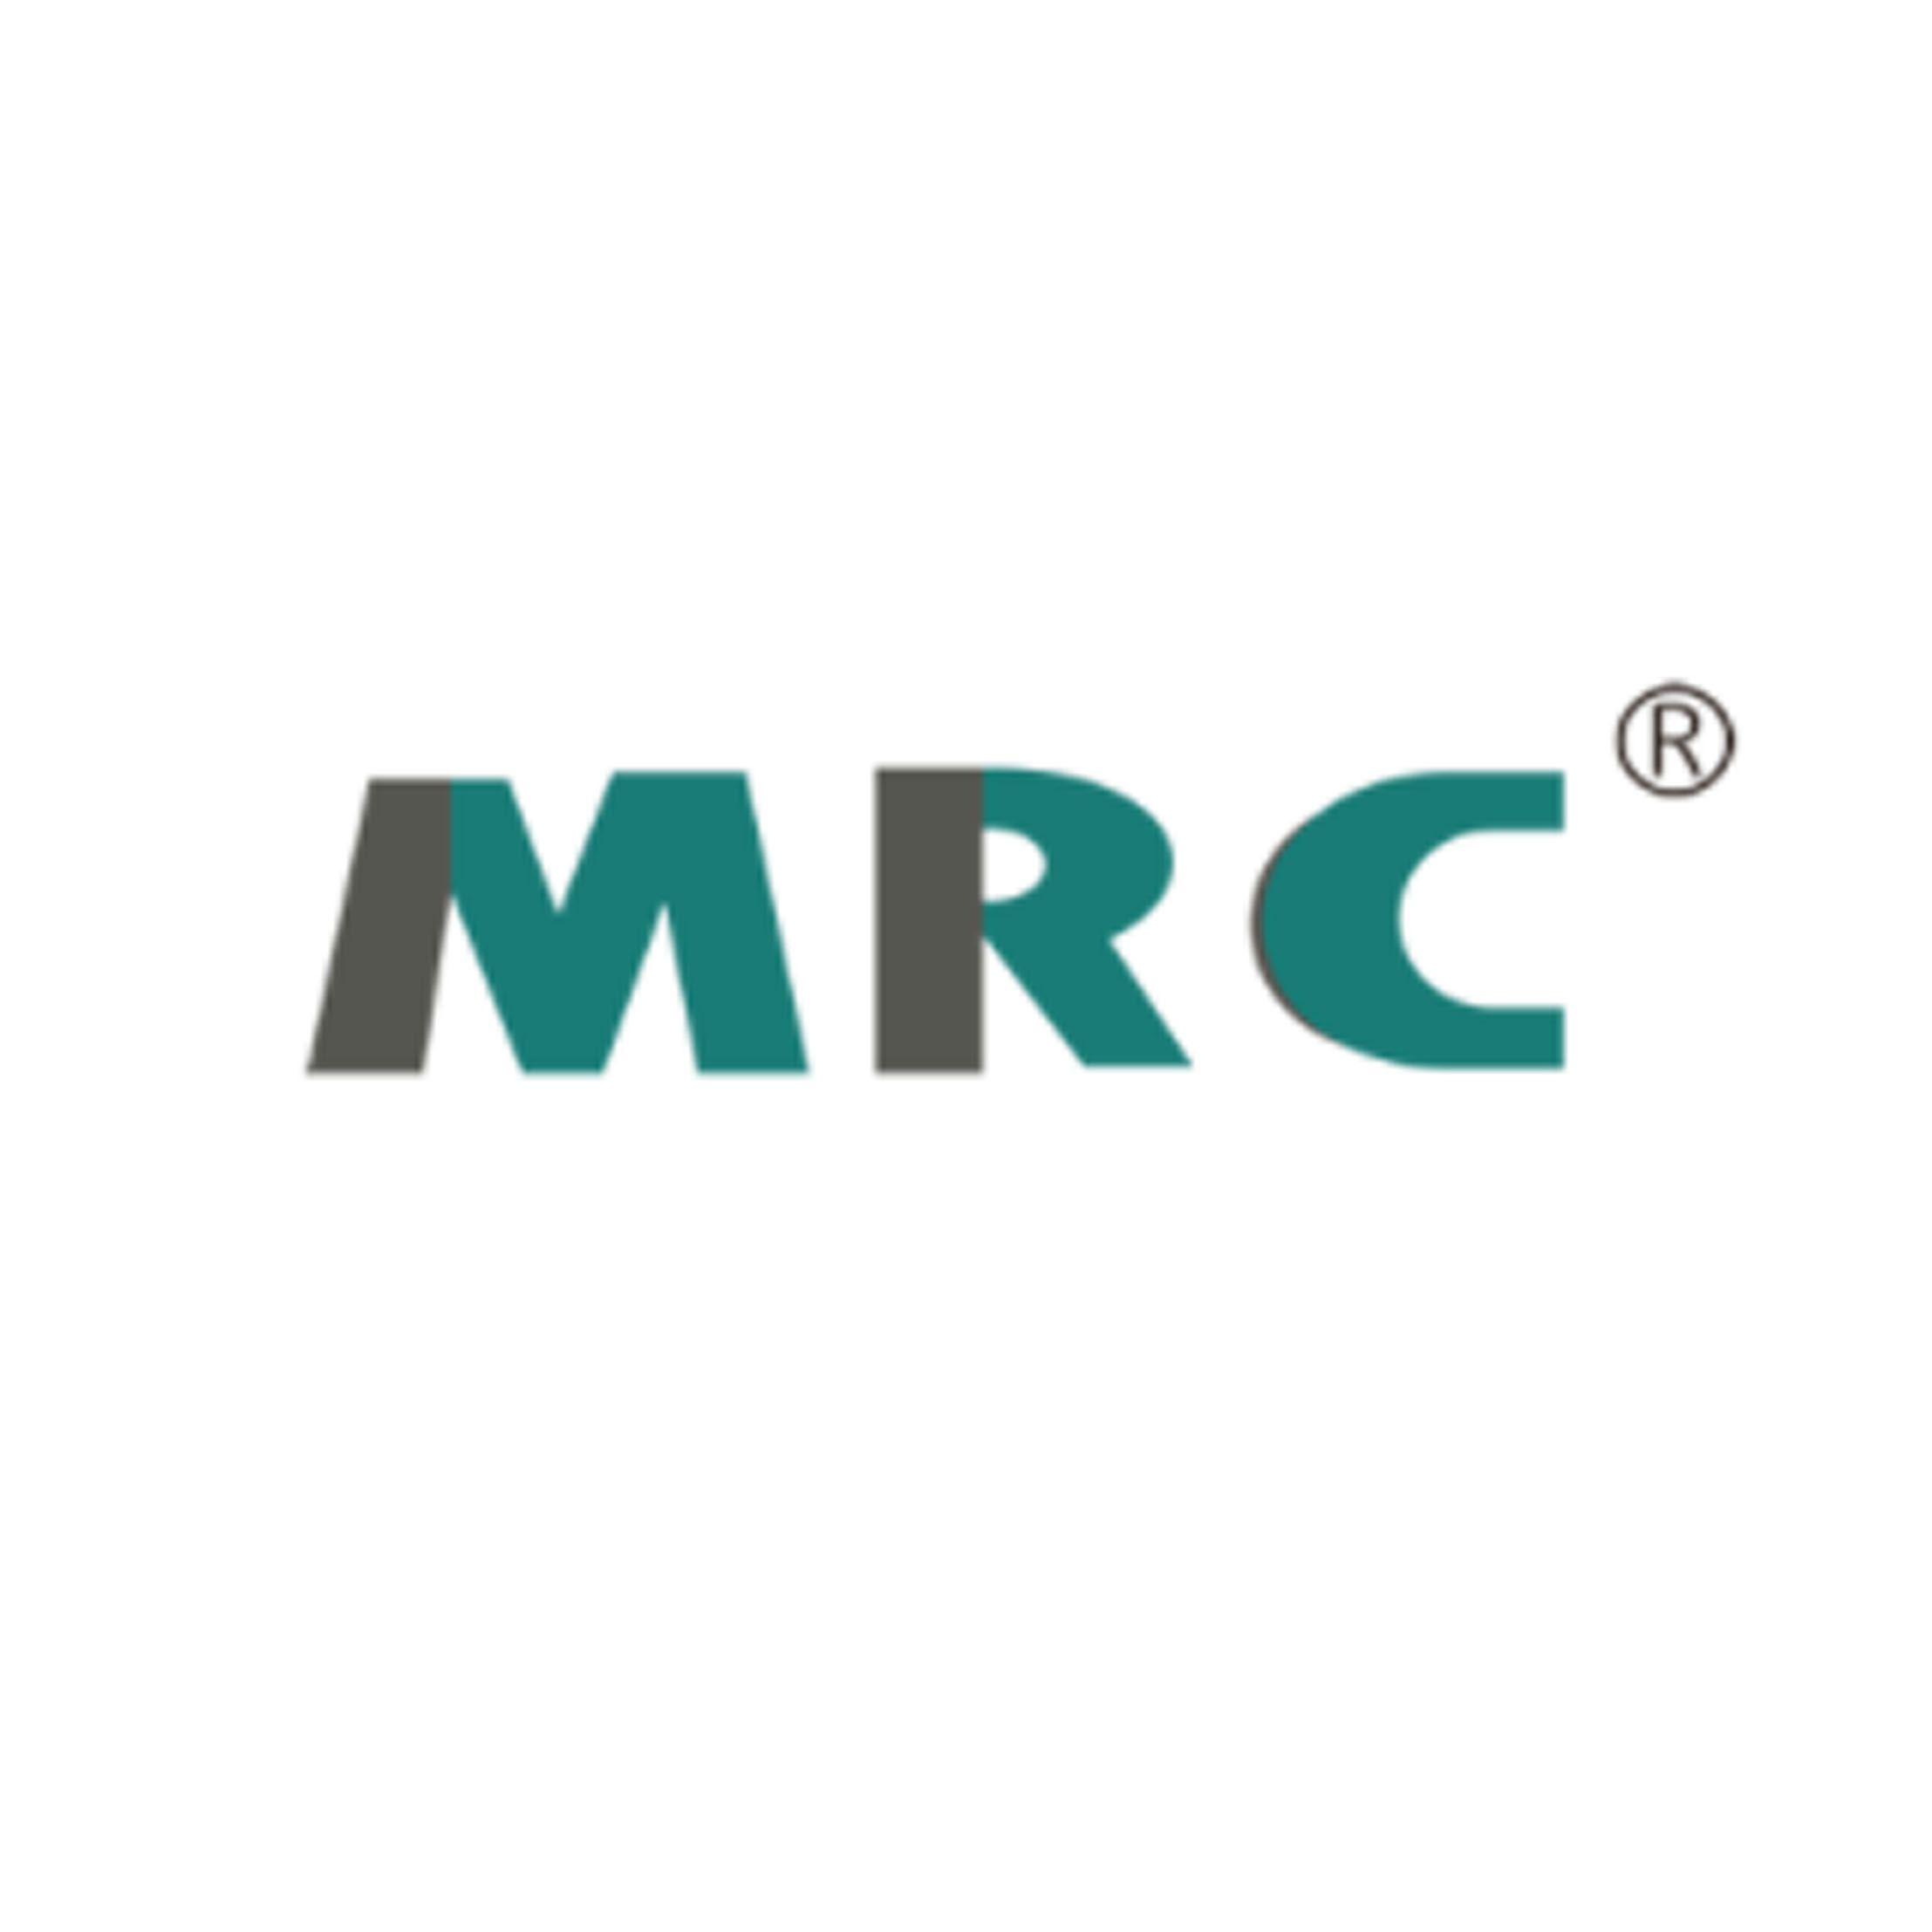 MRC 新西兰小牛血清、细胞培养级别 牛血清白蛋白 无脂肪酸、澳洲胎牛血清,现货